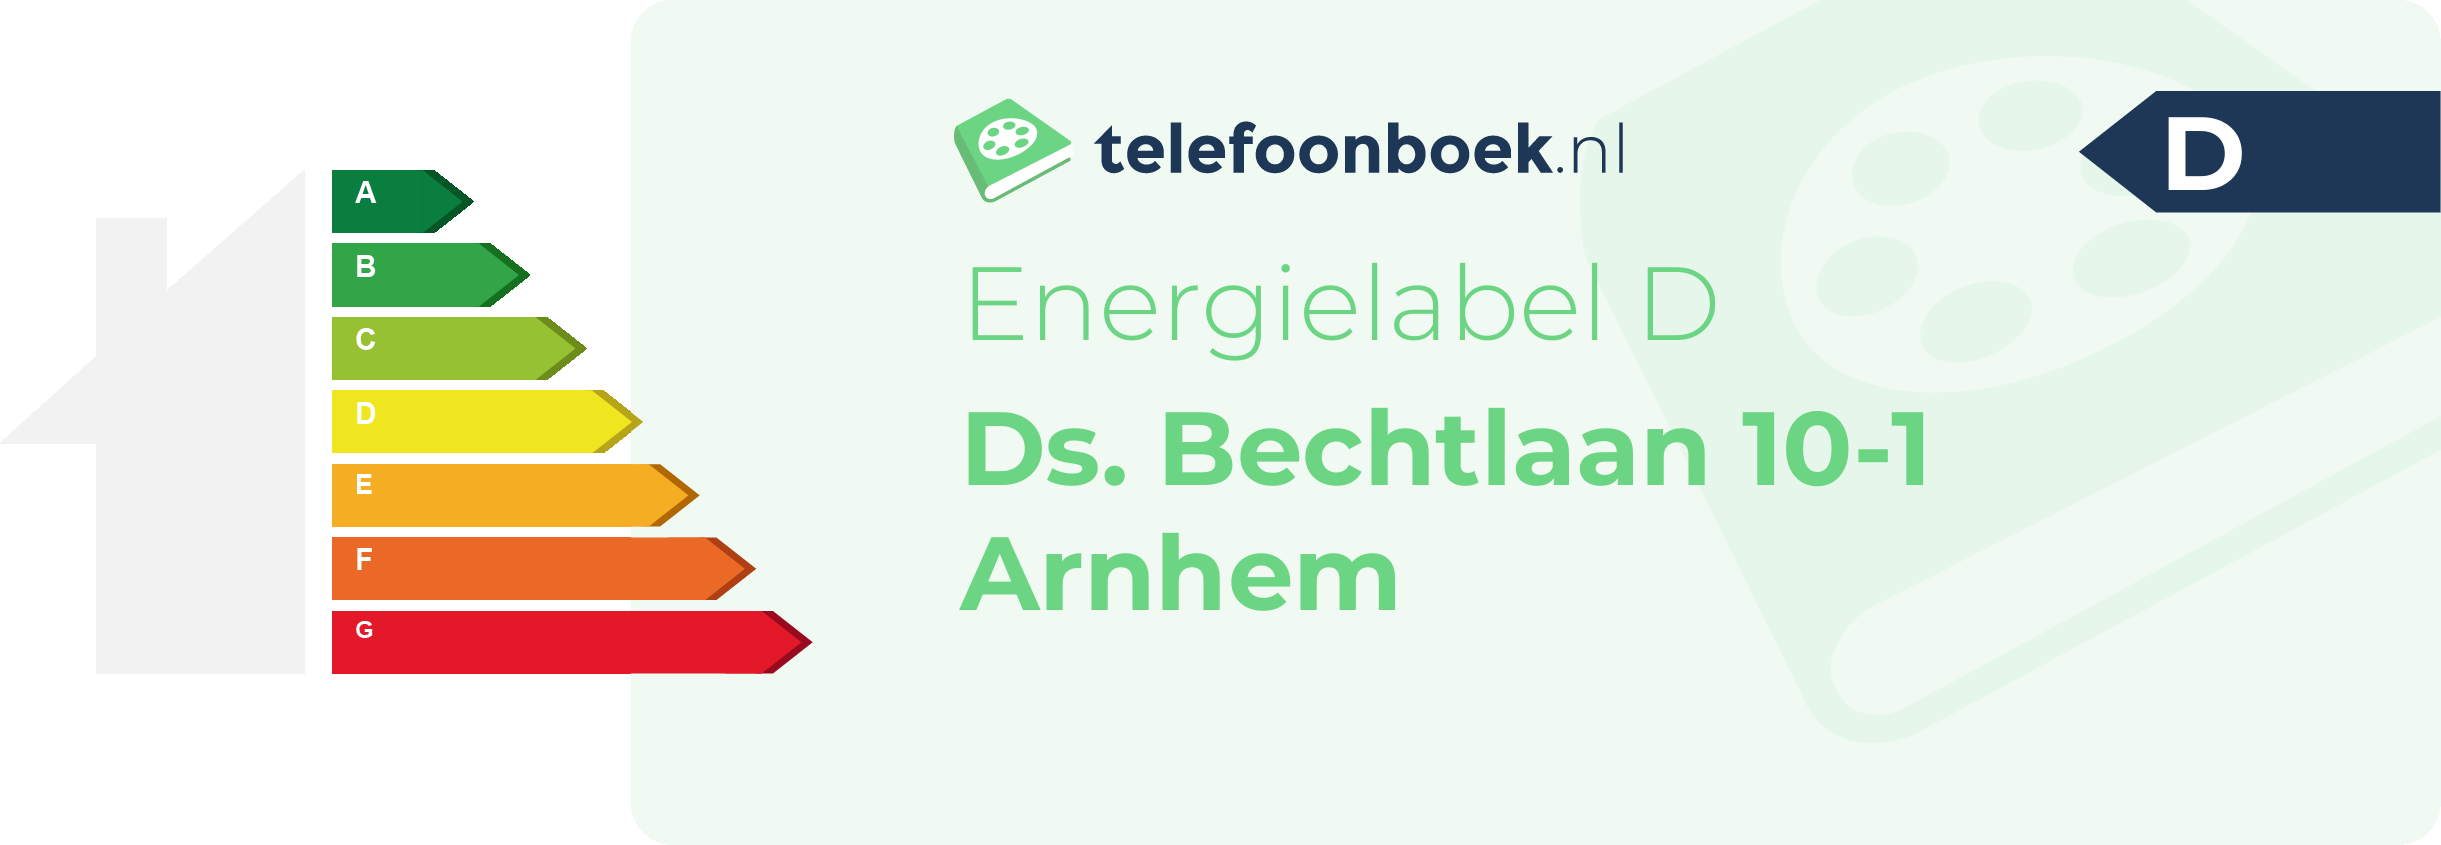 Energielabel Ds. Bechtlaan 10-1 Arnhem